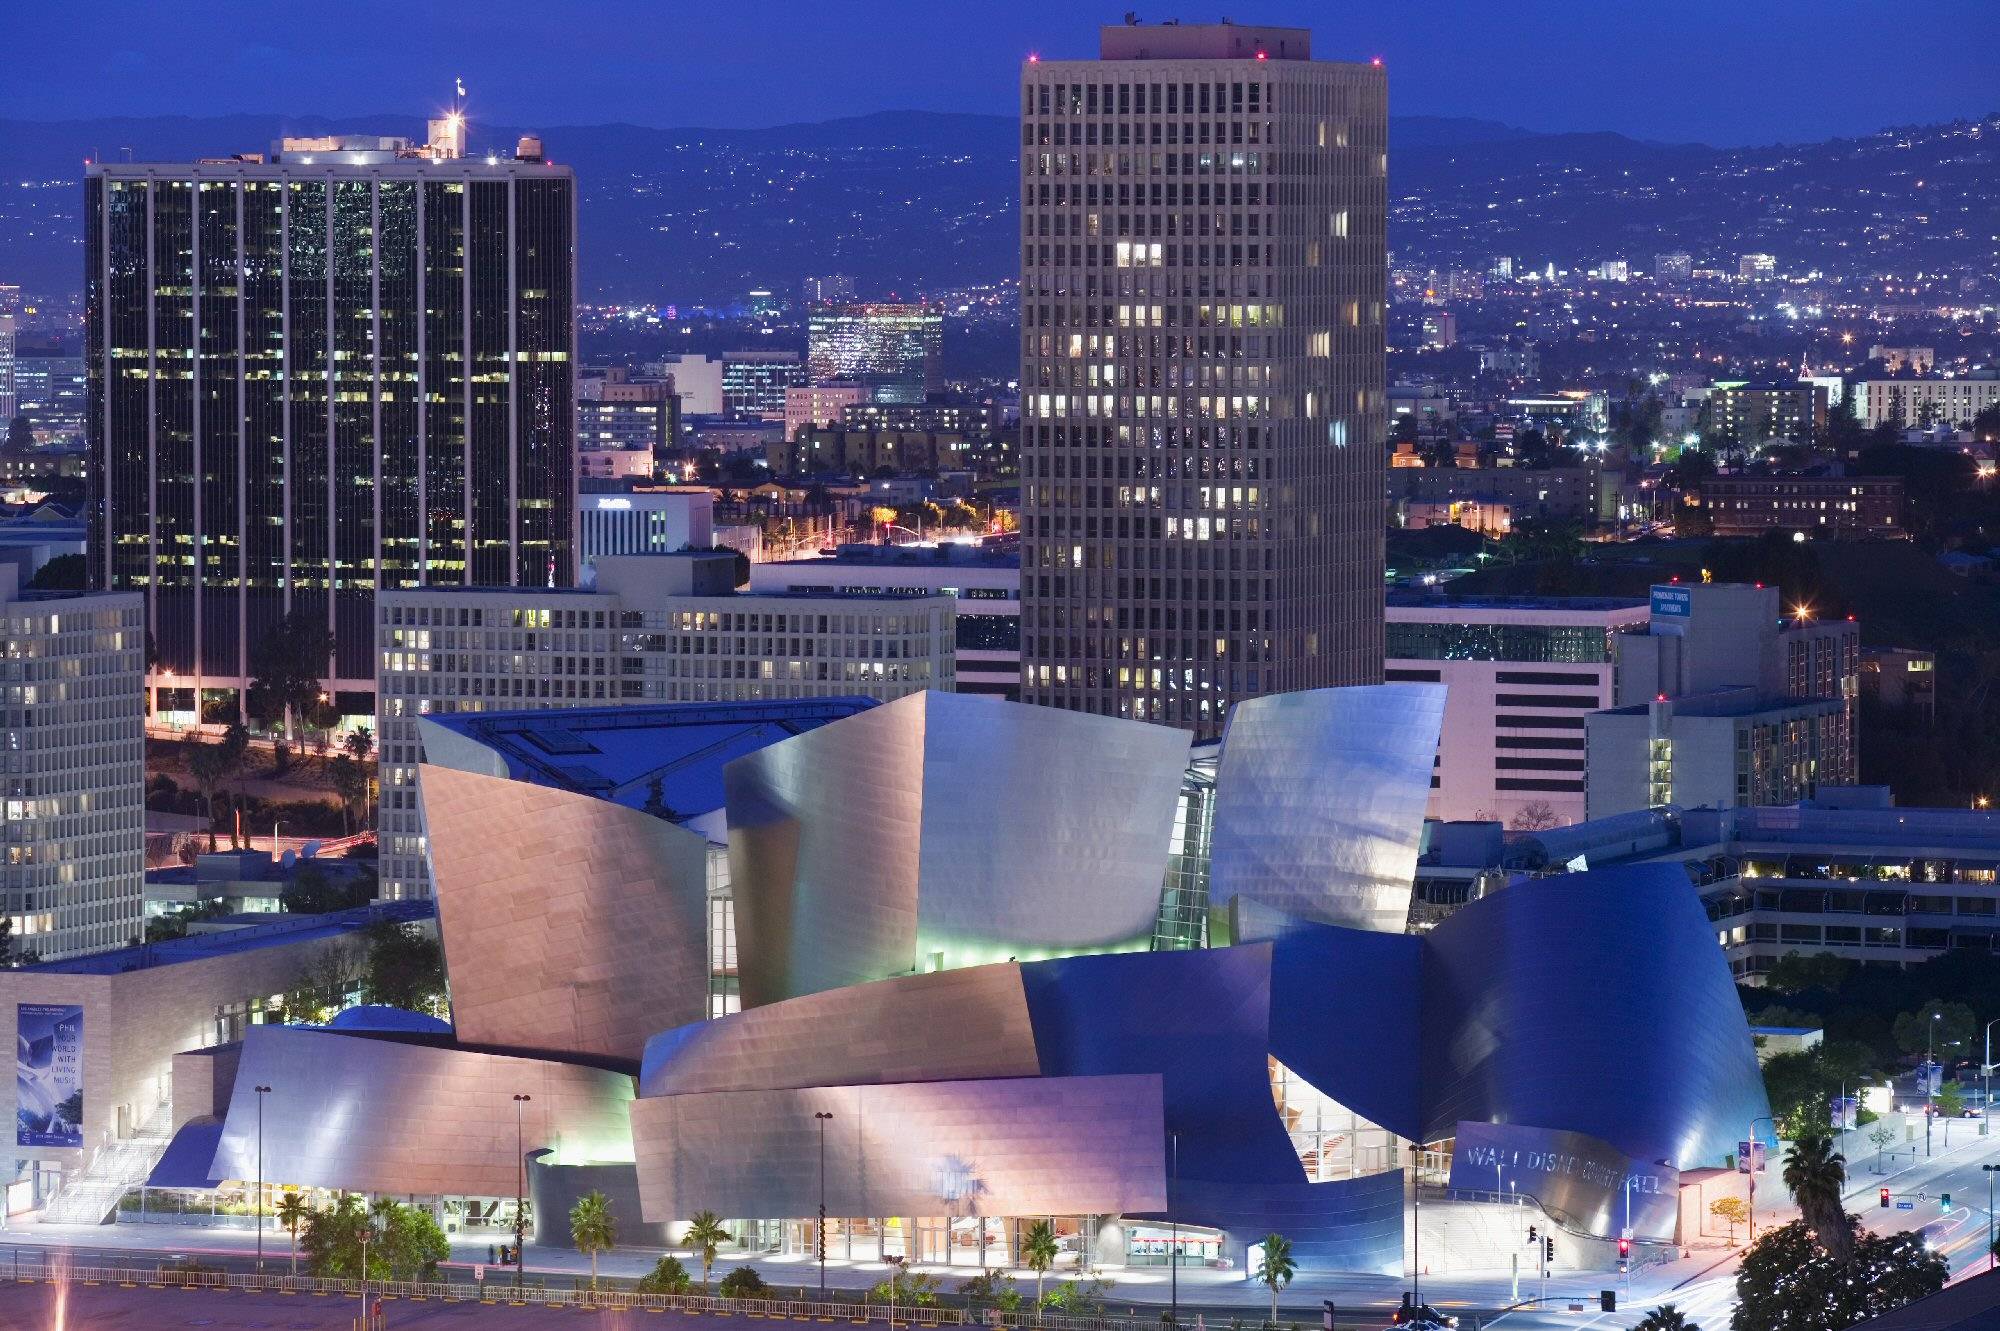 Зал диснея. Концертный зал Уолта Диснея в Лос-Анджелесе, США. Фрэнк Гери концертный зал Диснея в Лос Анджелесе. Концертный зал имени Уолта Диснея Лос-Анджелес. Концертный зал Уолта Диснея в Лос-Анджелесе архитектура.